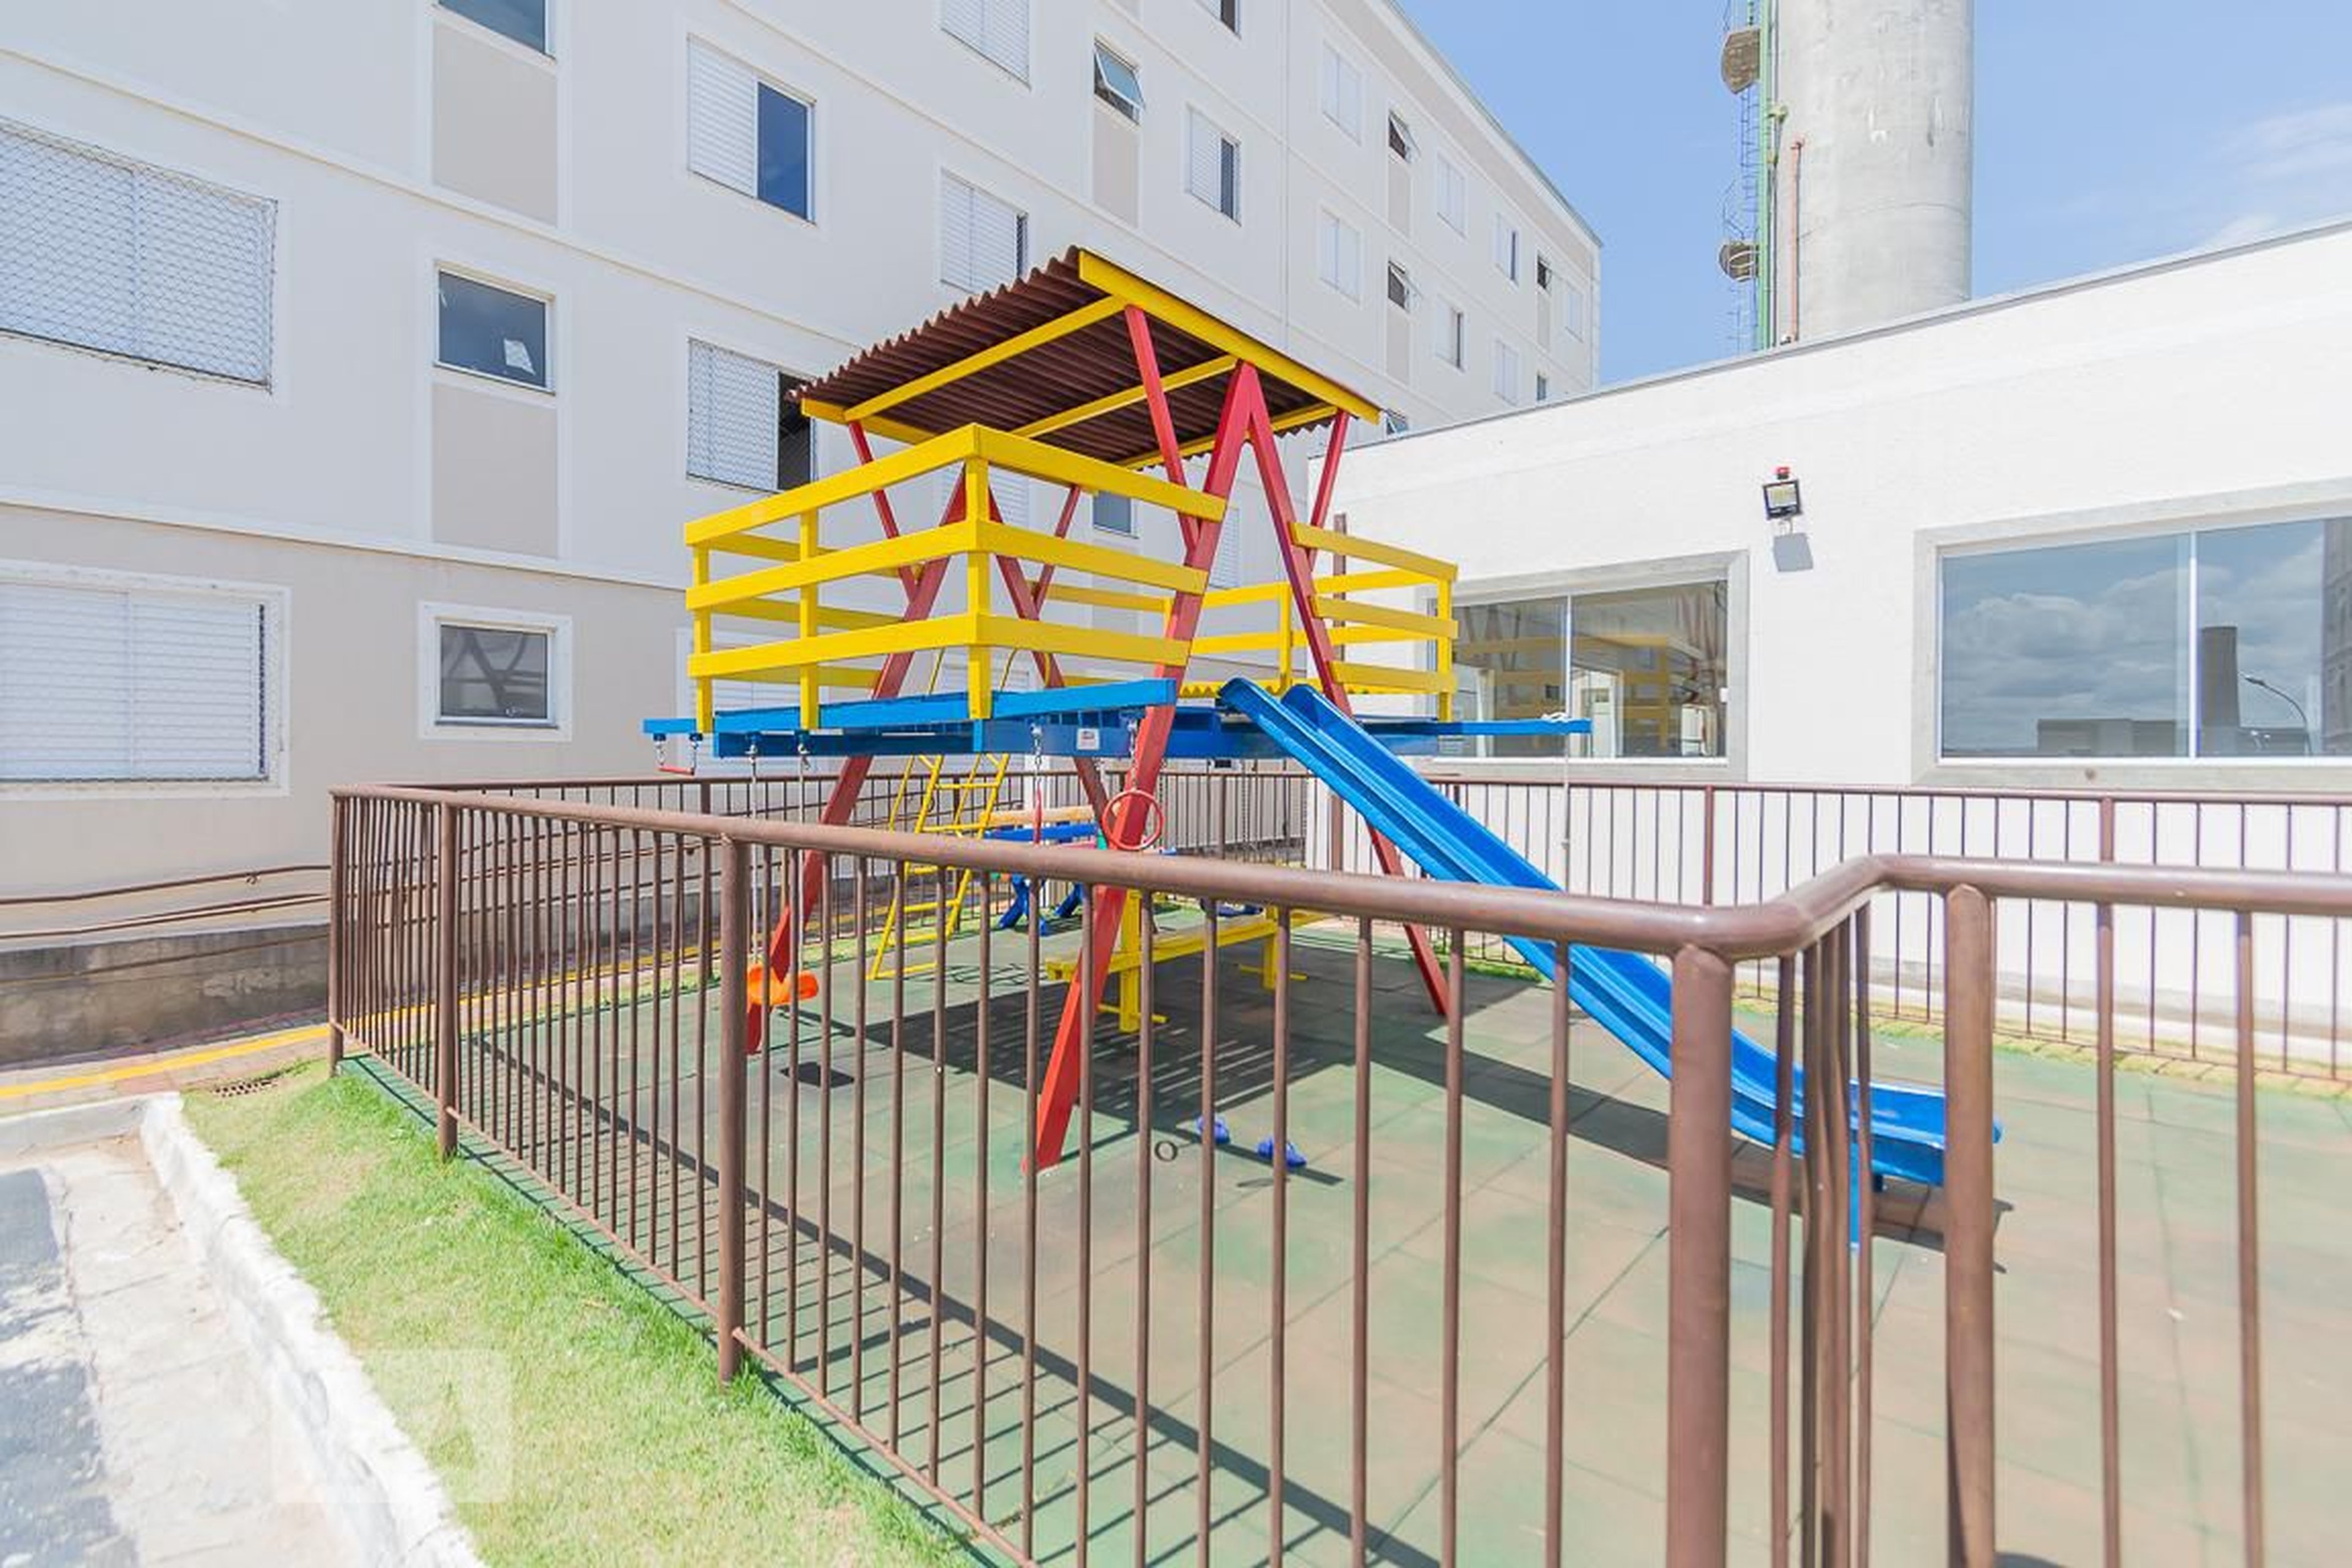 Playground - Parque dos Cantos